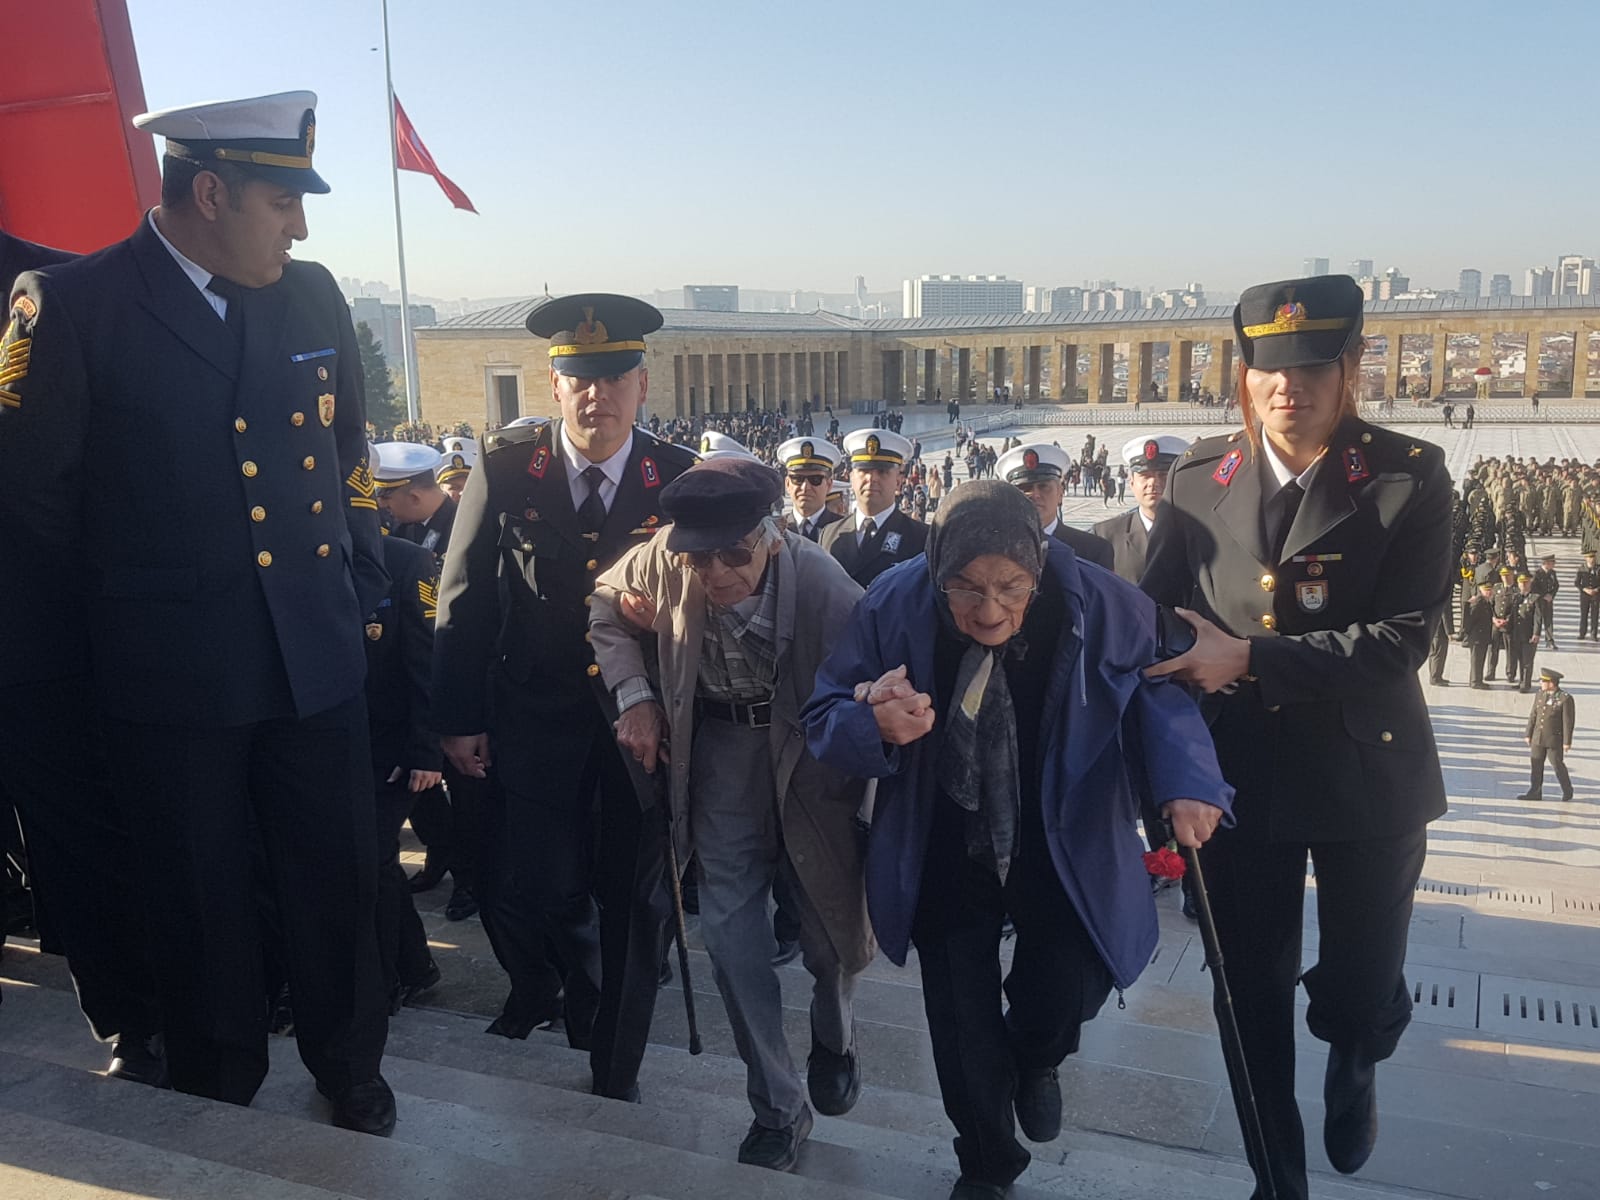 Türkiye'nin dört bir yanından Anıtkabir'e gelen vatandaşlar, derin bir üzüntü yaşadıklarını; ancak Atatürk'ün huzurunda olmaktan da mutluluk duyduklarını söyledi. Anıtkabir, 10 Kasım nedeniyle saat 22.00'ye kadar ziyaretçilere açık.